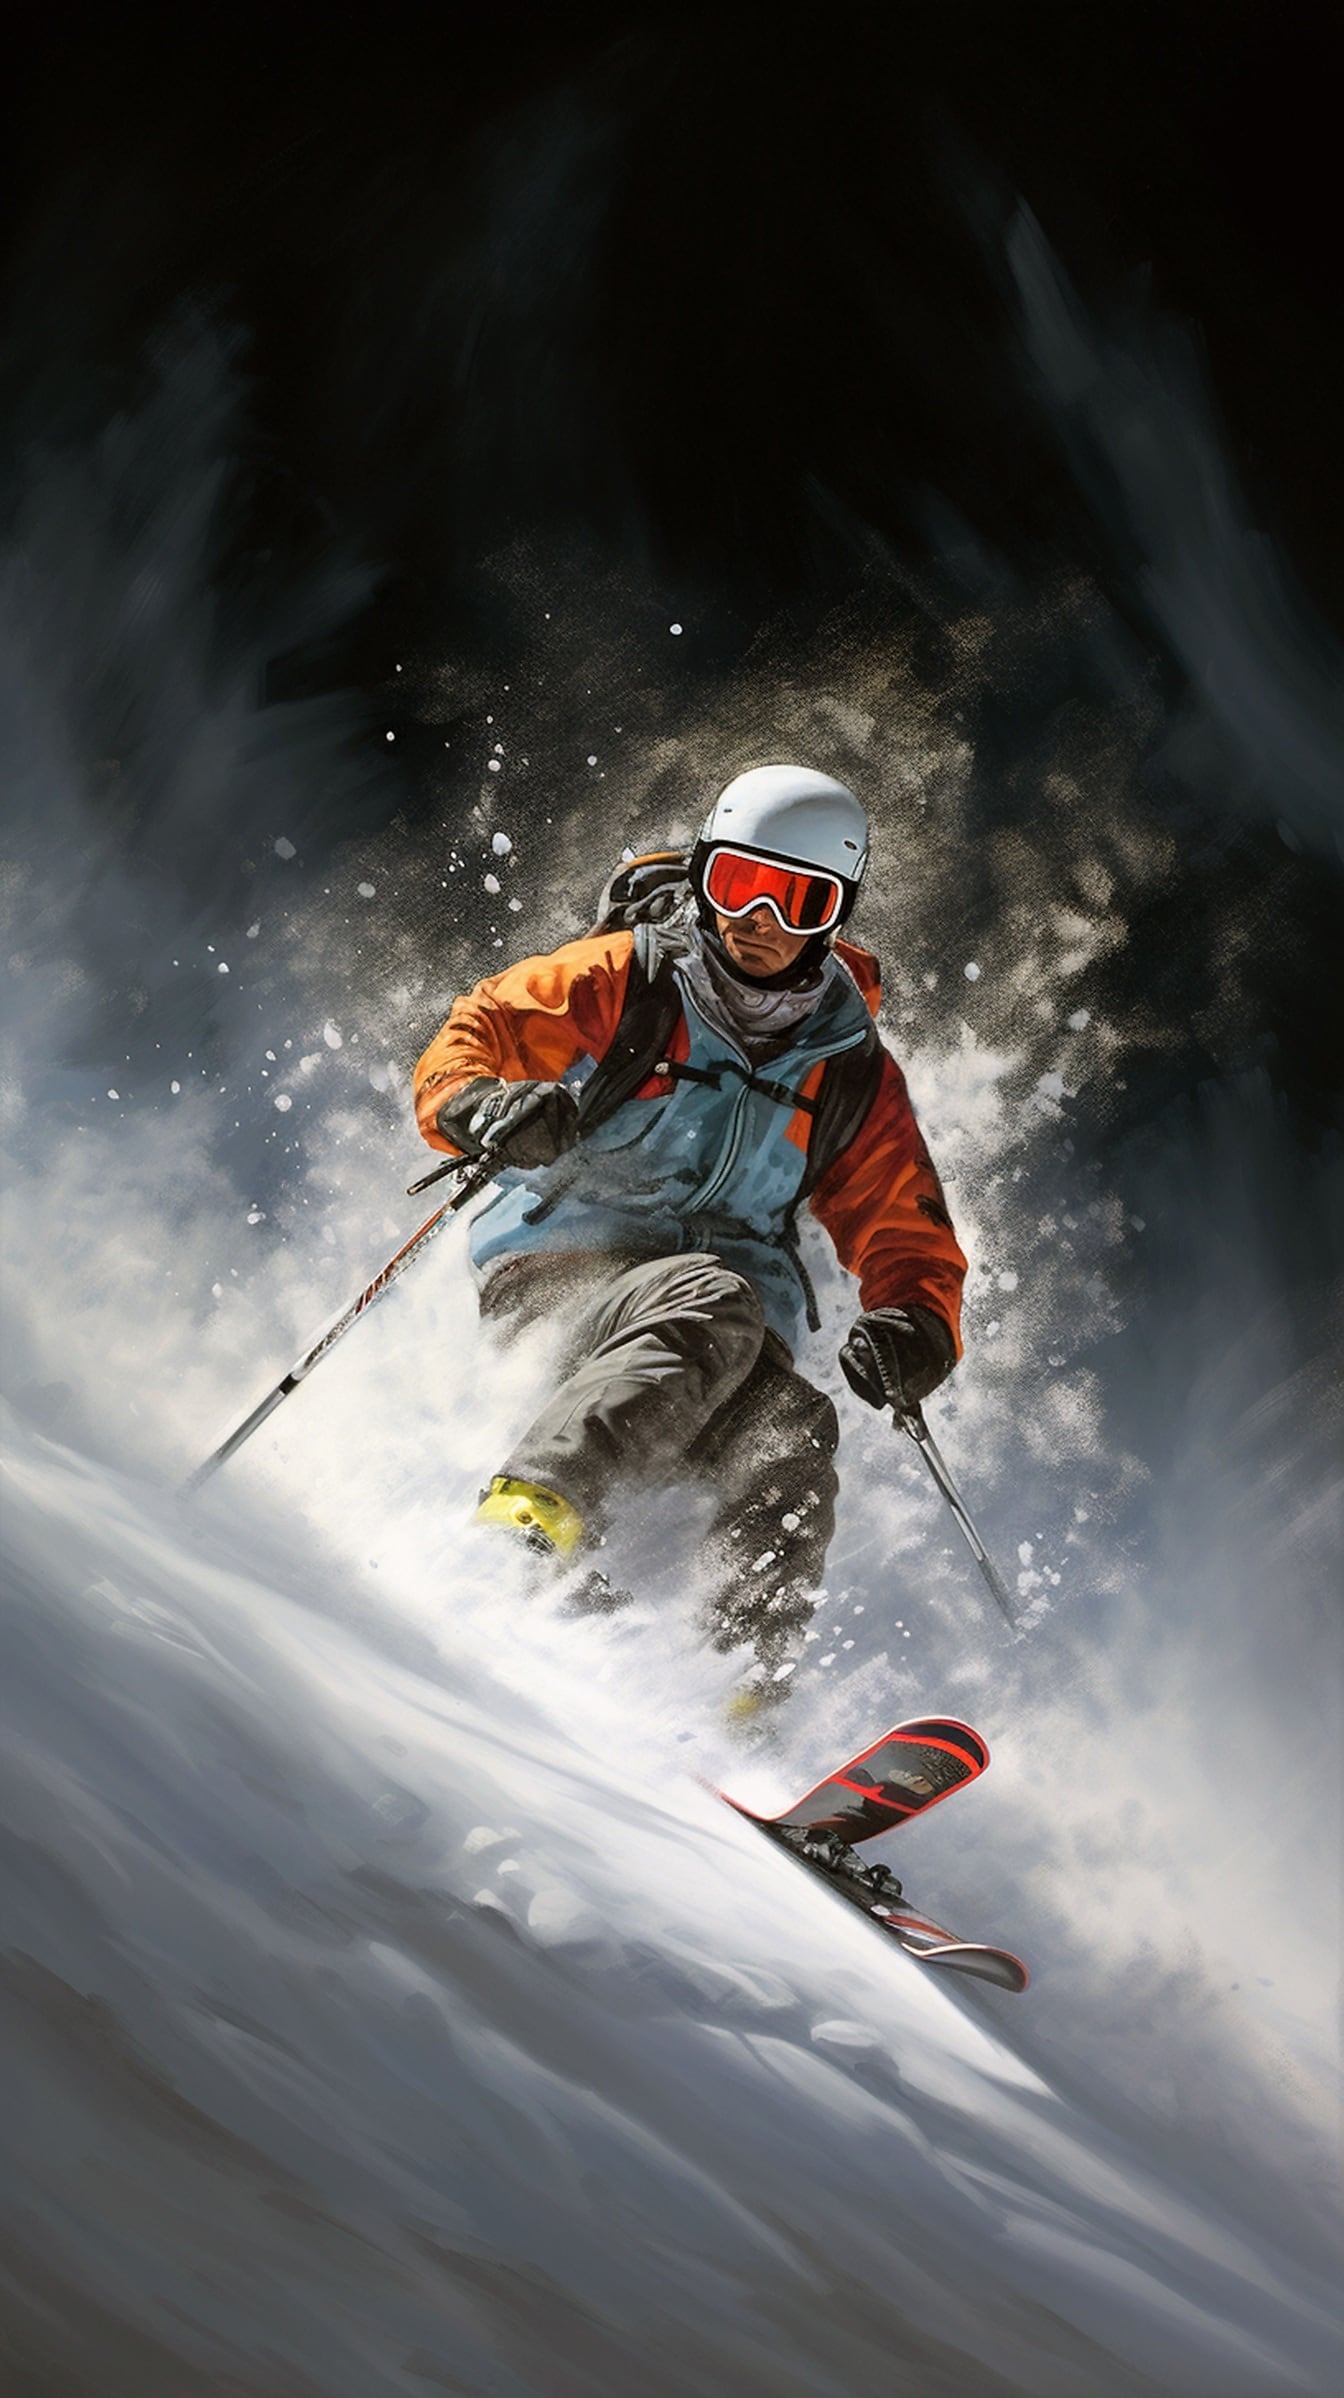 Muž extrémní lyžař lyžování na zasněženém horském svahu